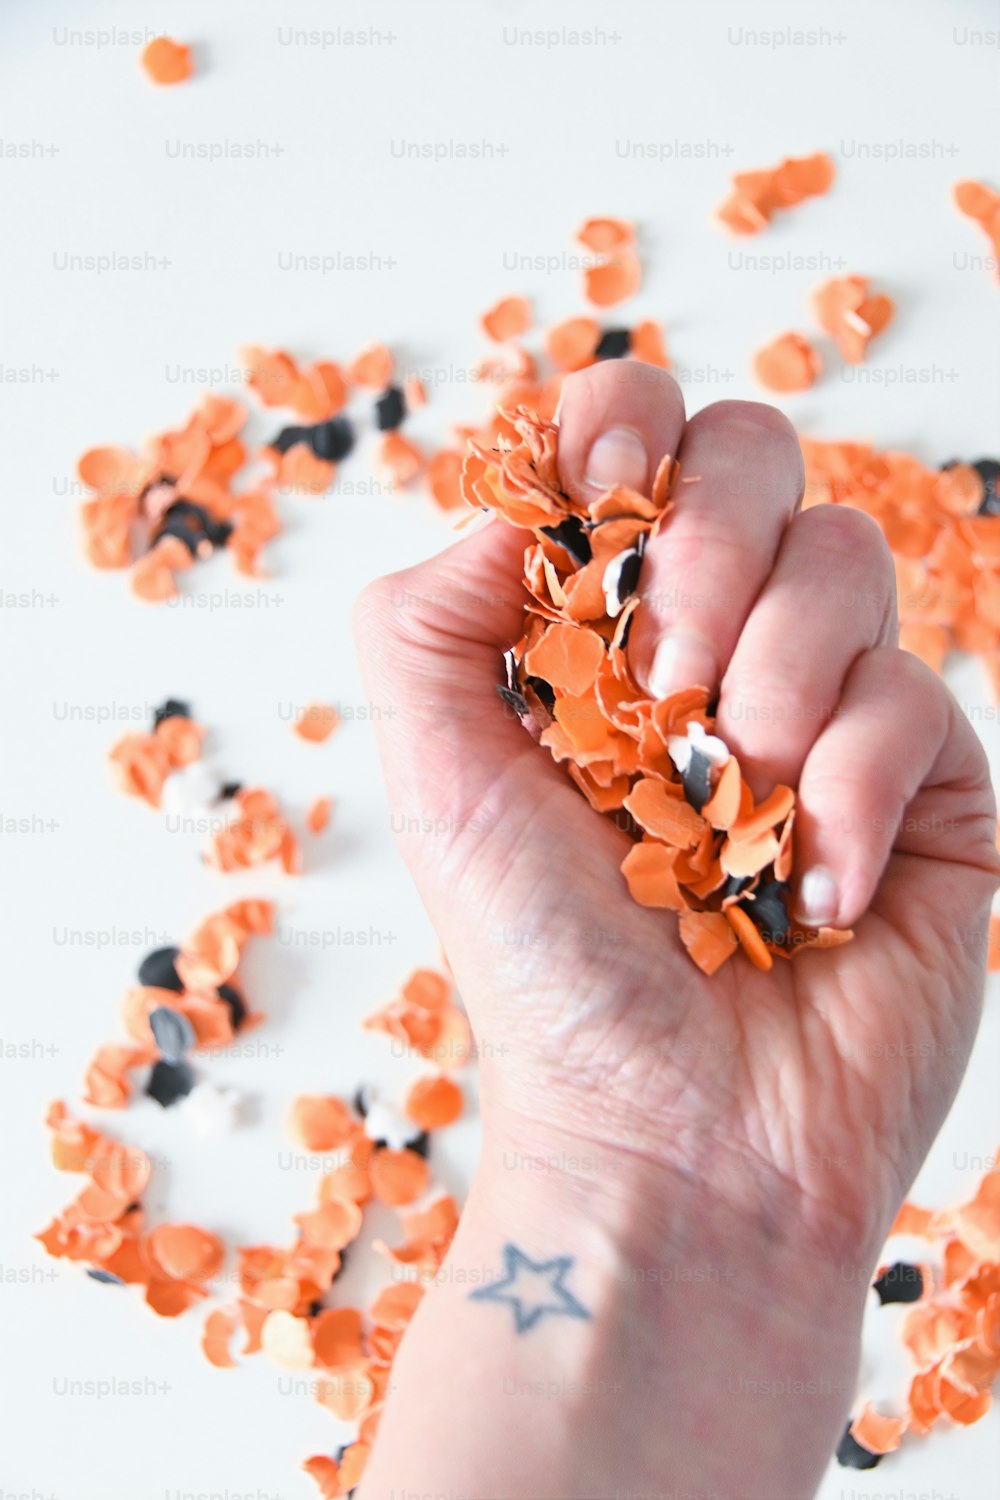 uma mão segurando um punhado de confetes laranja e preto